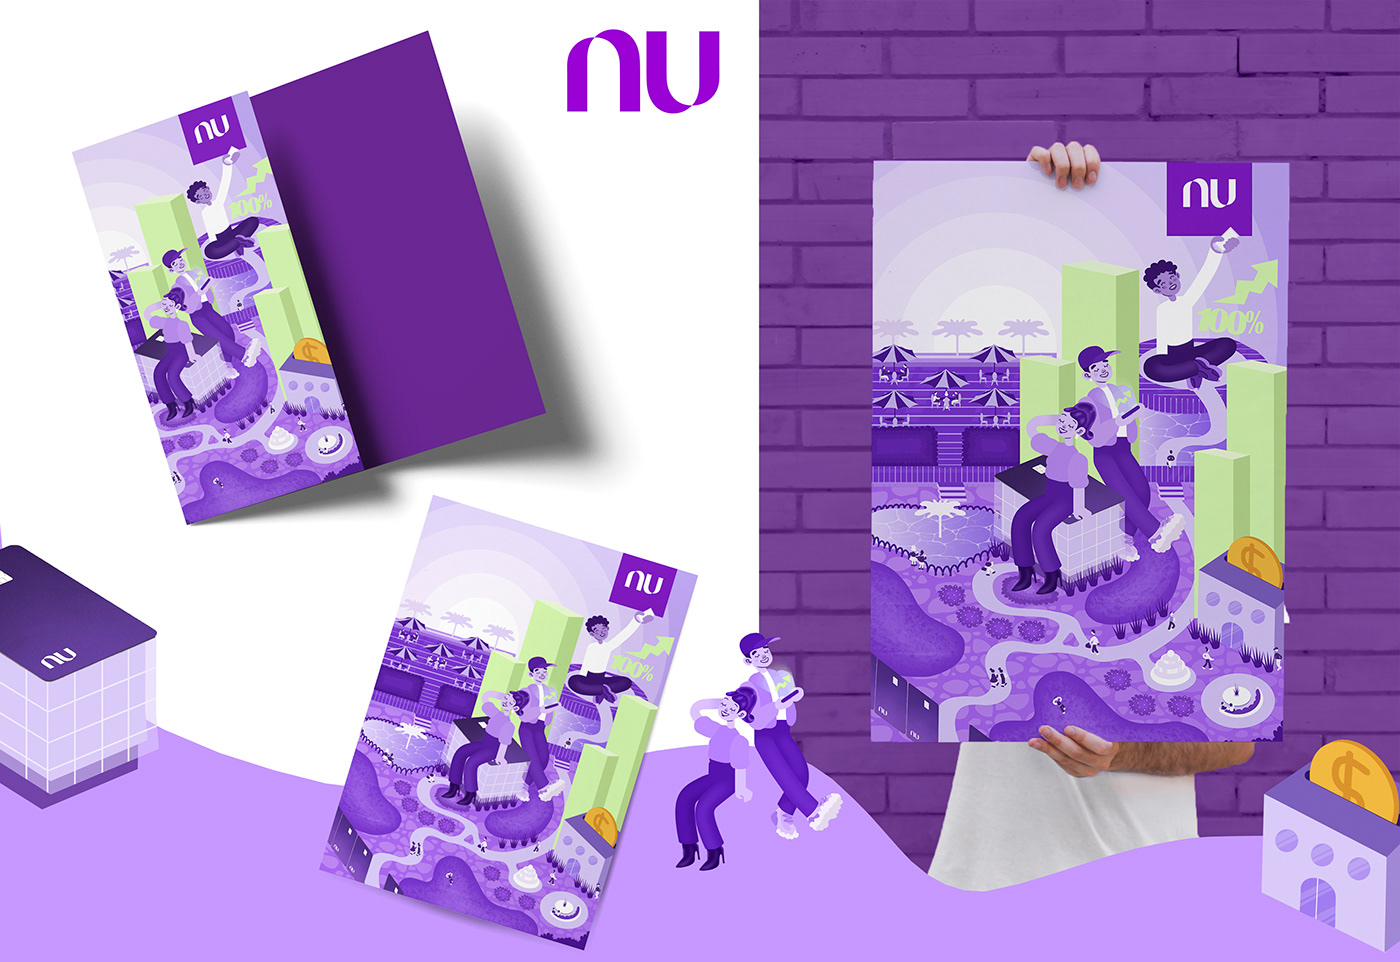 Nubank roxo colors photoshop Behance ilustrator shapes Advertising  ilustration design